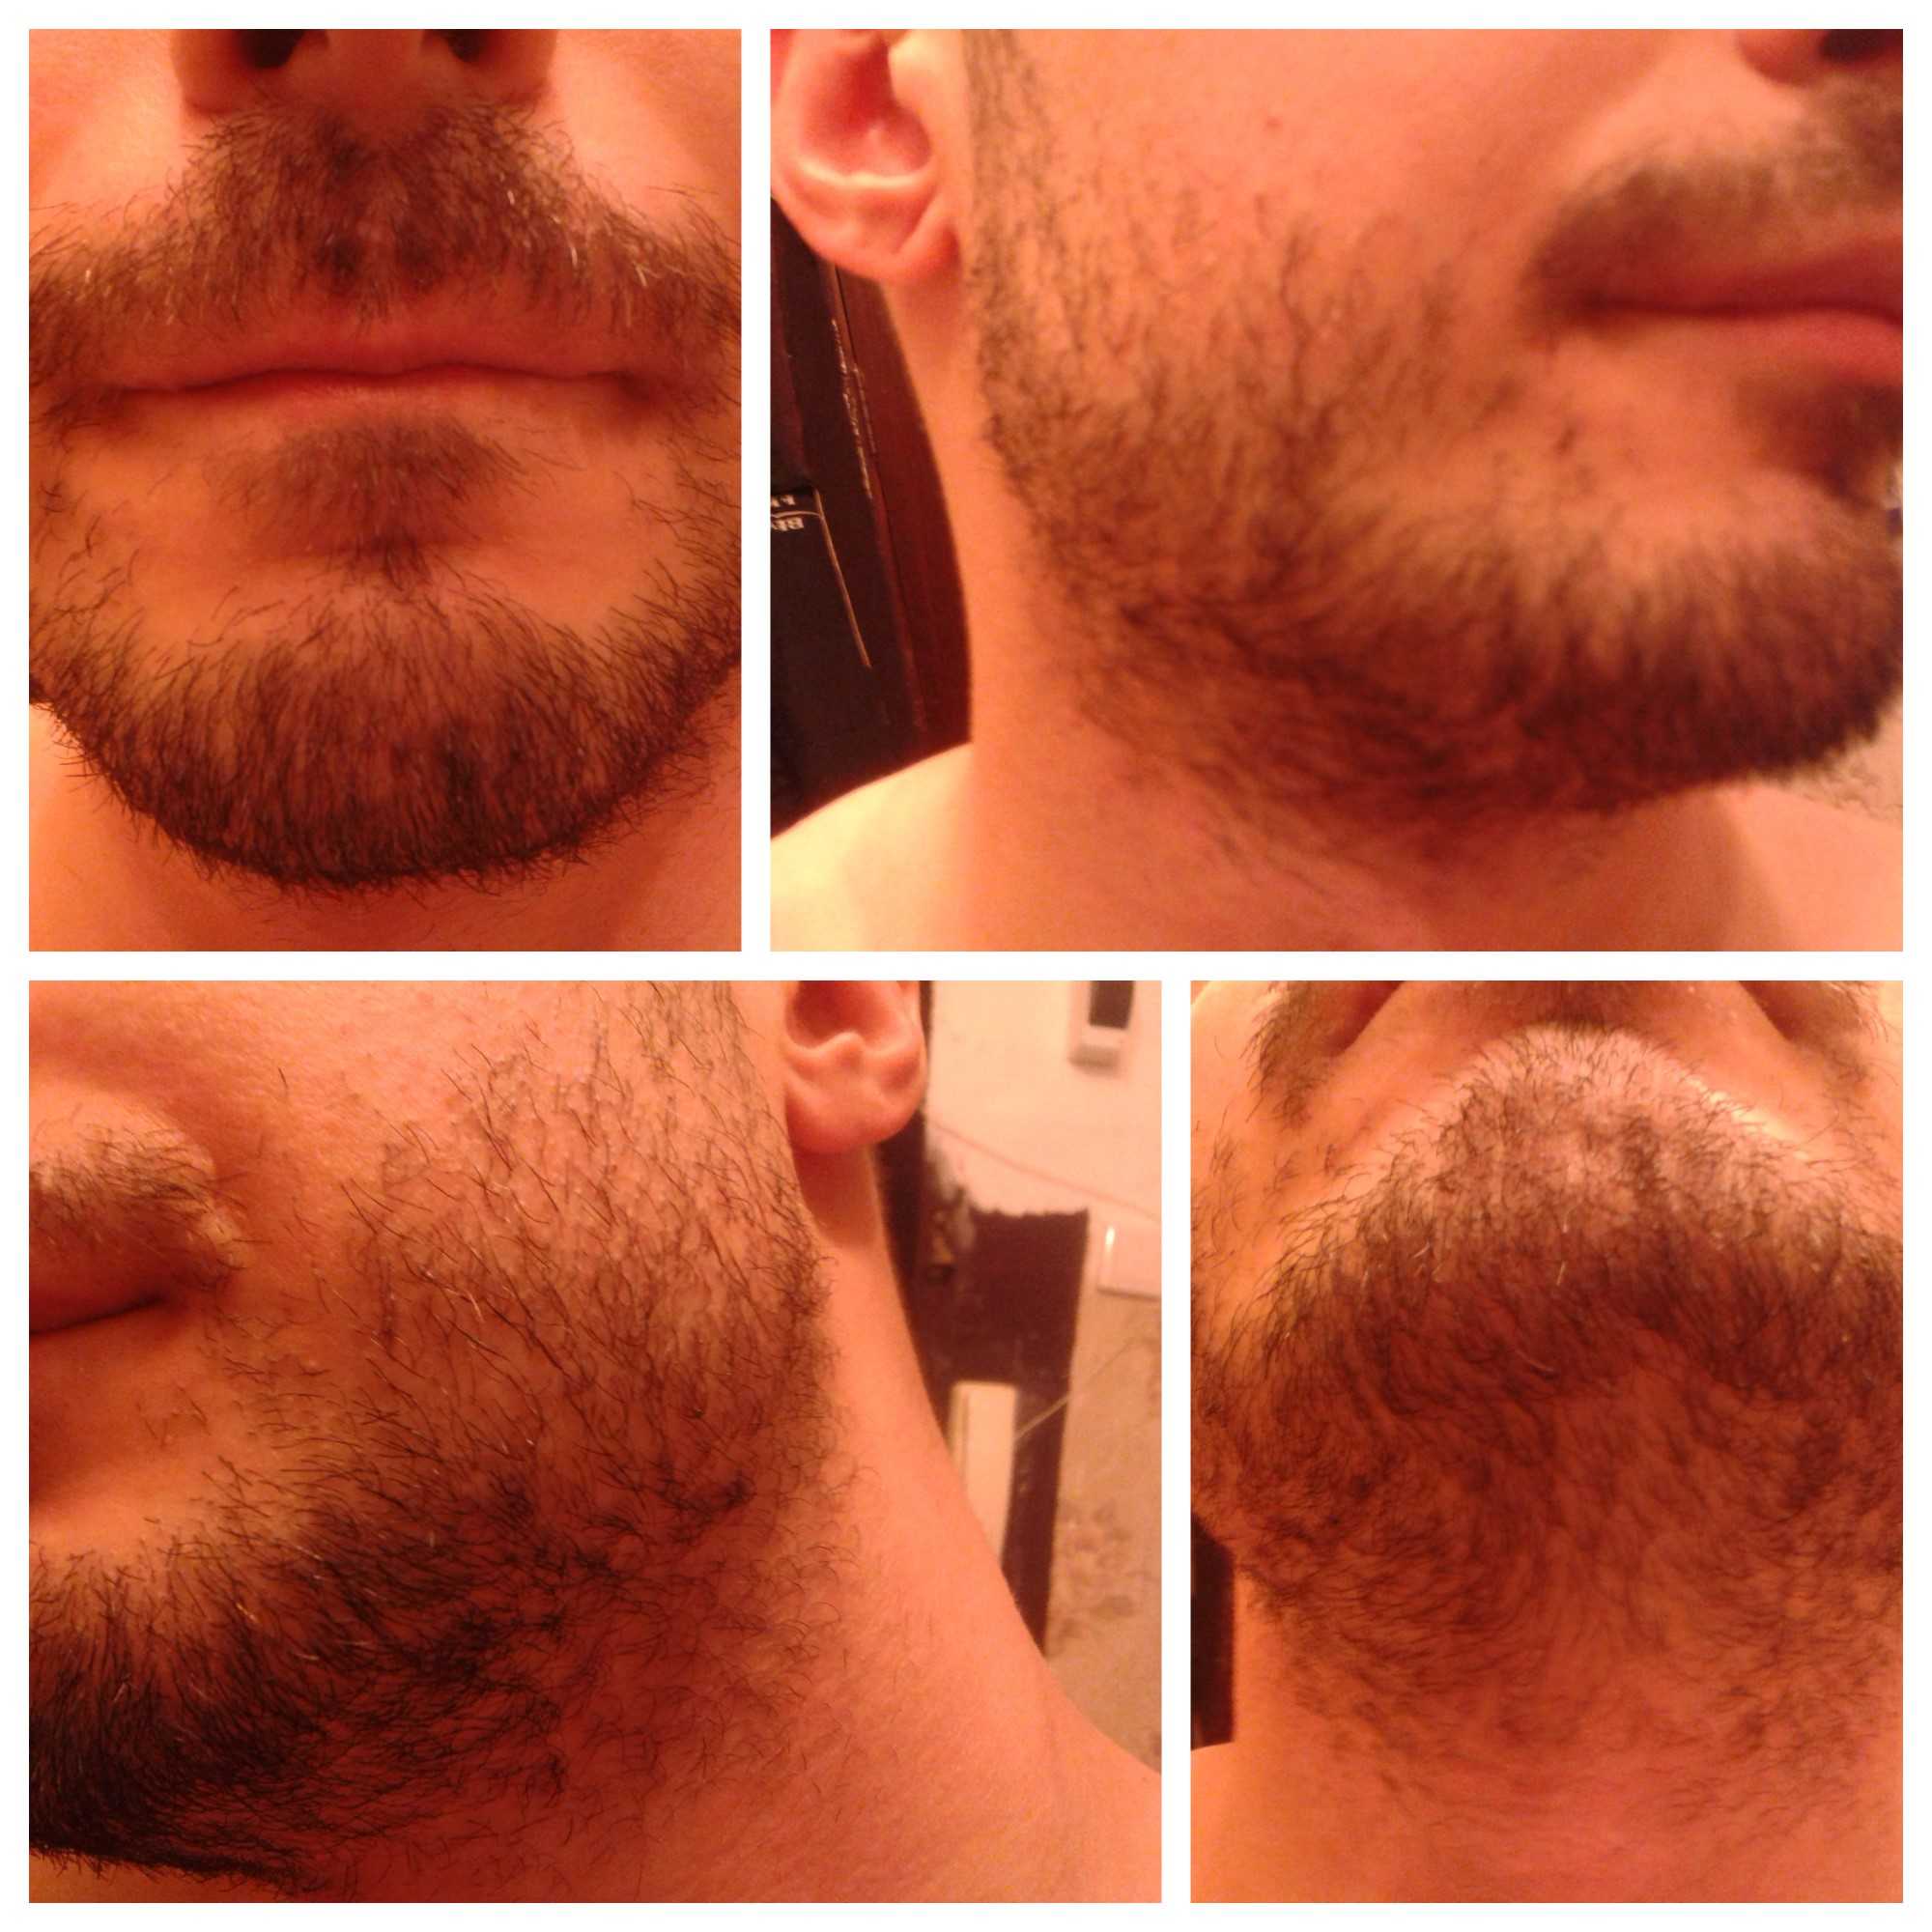 Рост волос на лице у мужчин. Миноксидил для бороды. Heavy Beard миноксидил. Миноксидил для бороды Прогресс. Миноксидил 5 % alerana для бороды.